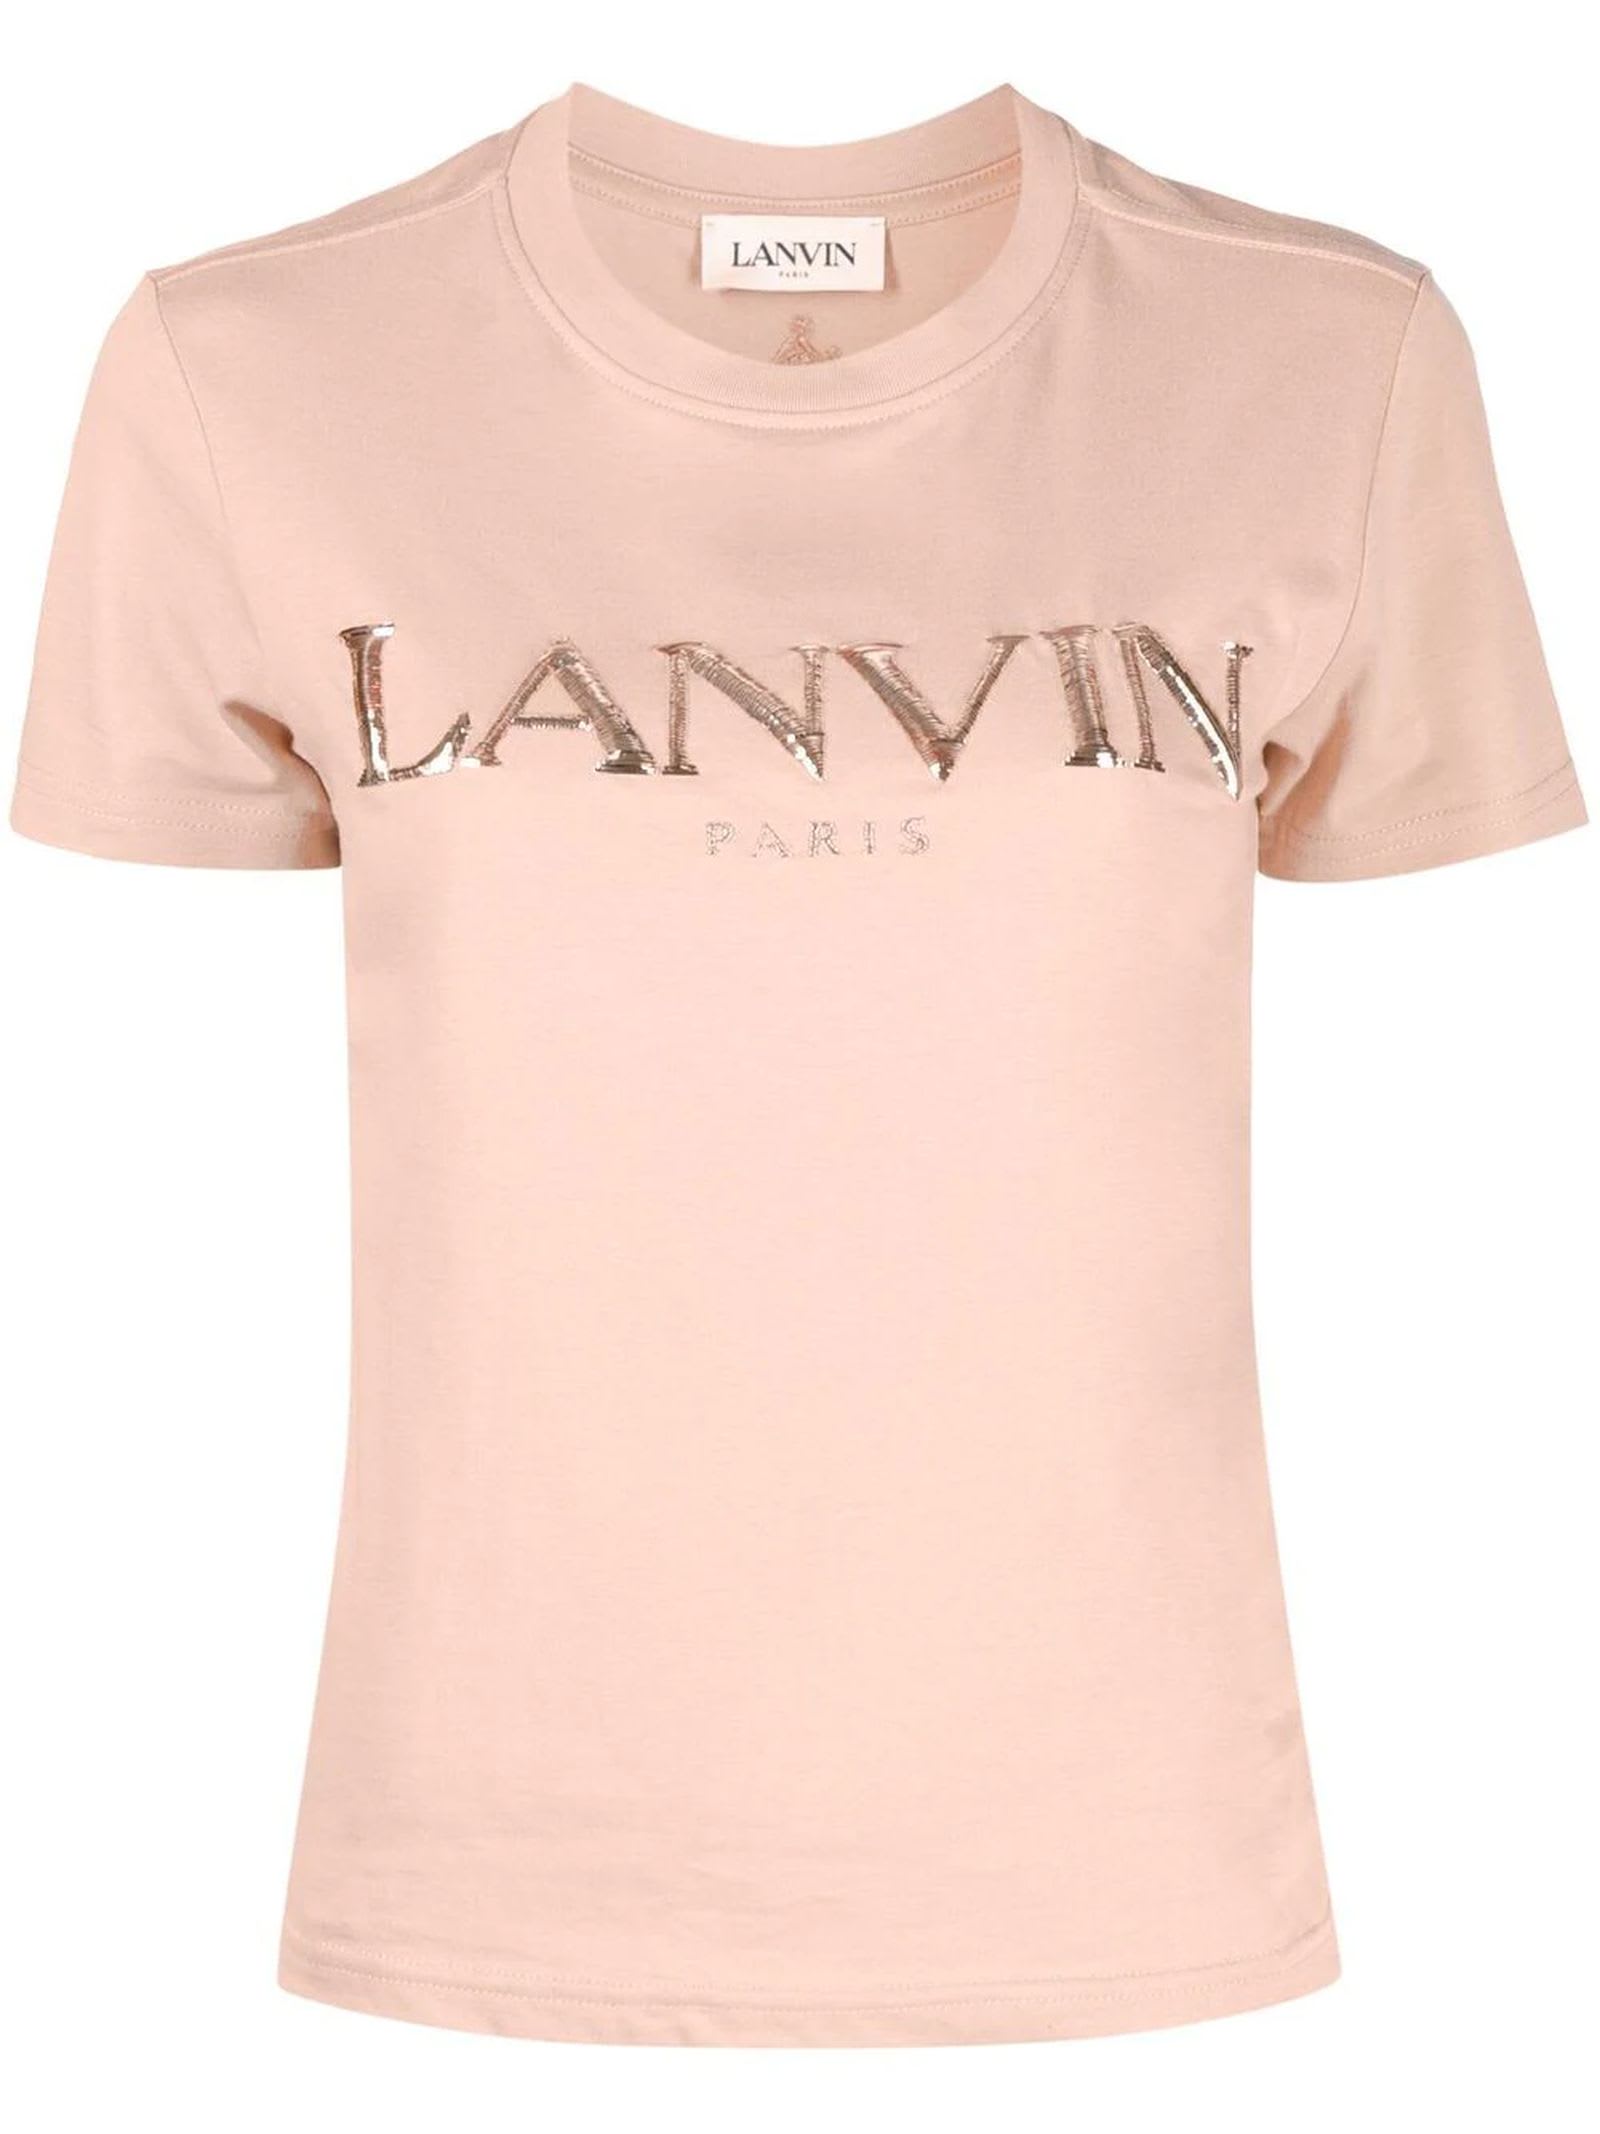 Lanvin Coral Pink Cotton T-shirt